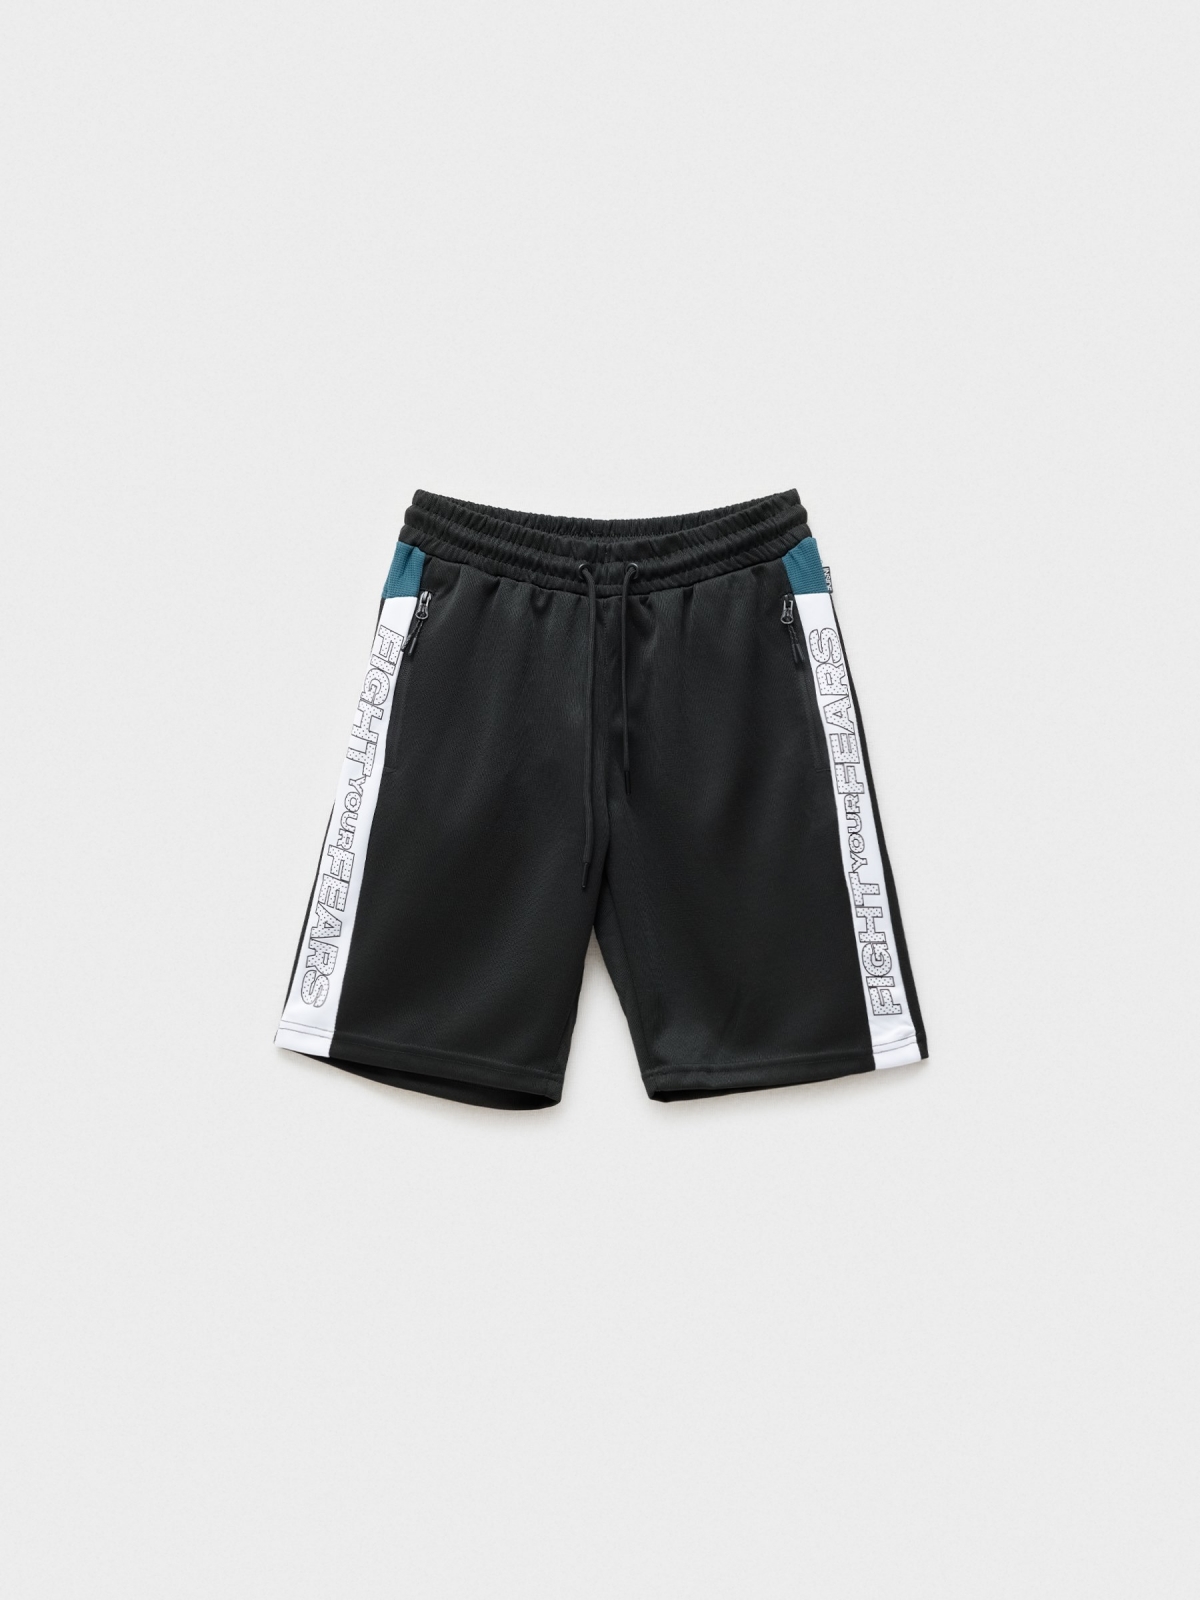  Bermuda shorts side bands black